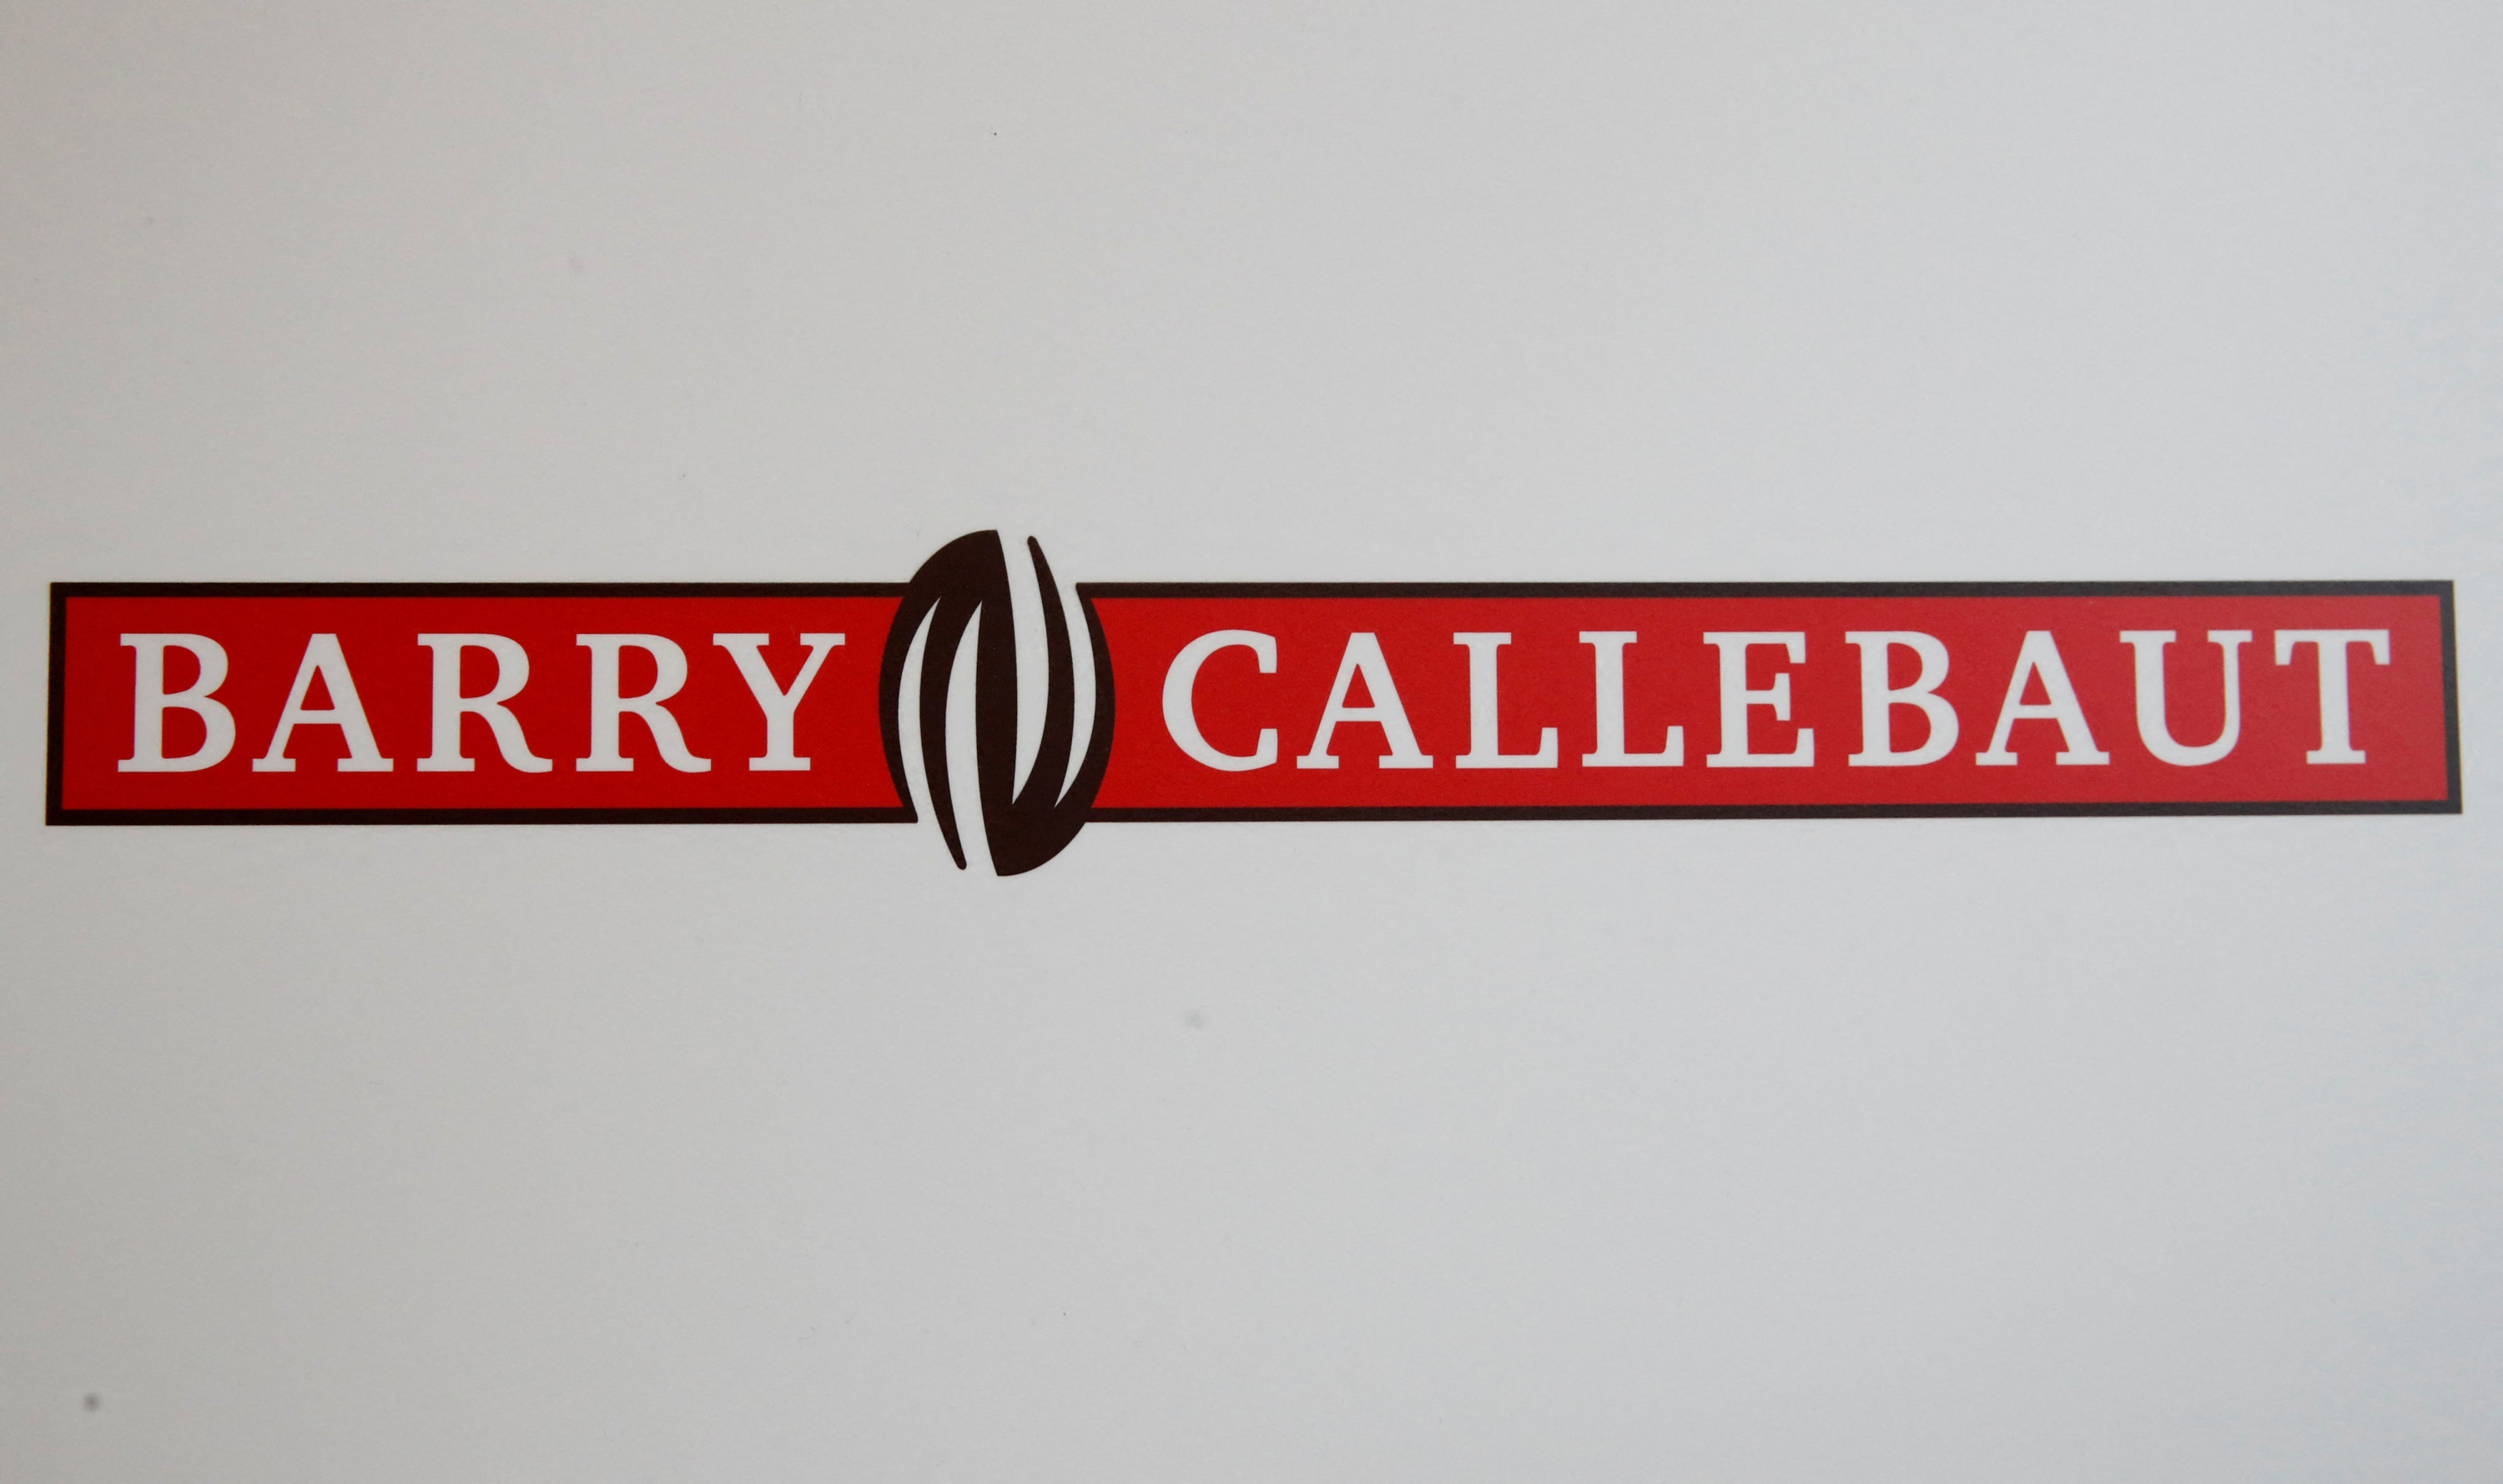 La Bourse suisse impose une amende de 110.000 CHF à Barry Callebaut